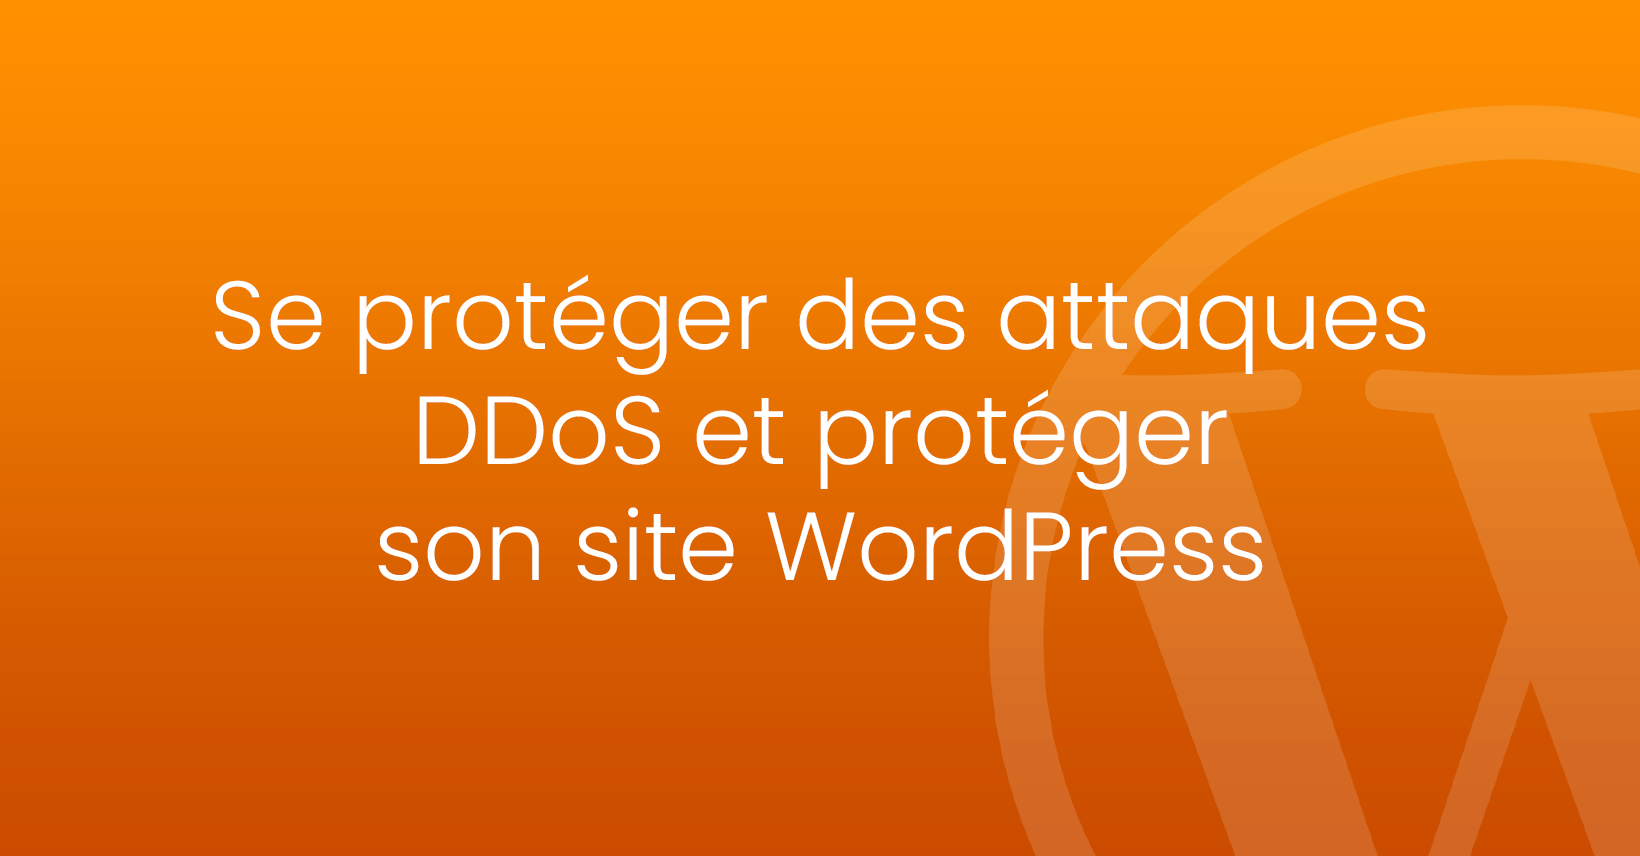 Se protéger des attaques DDoS WordPress